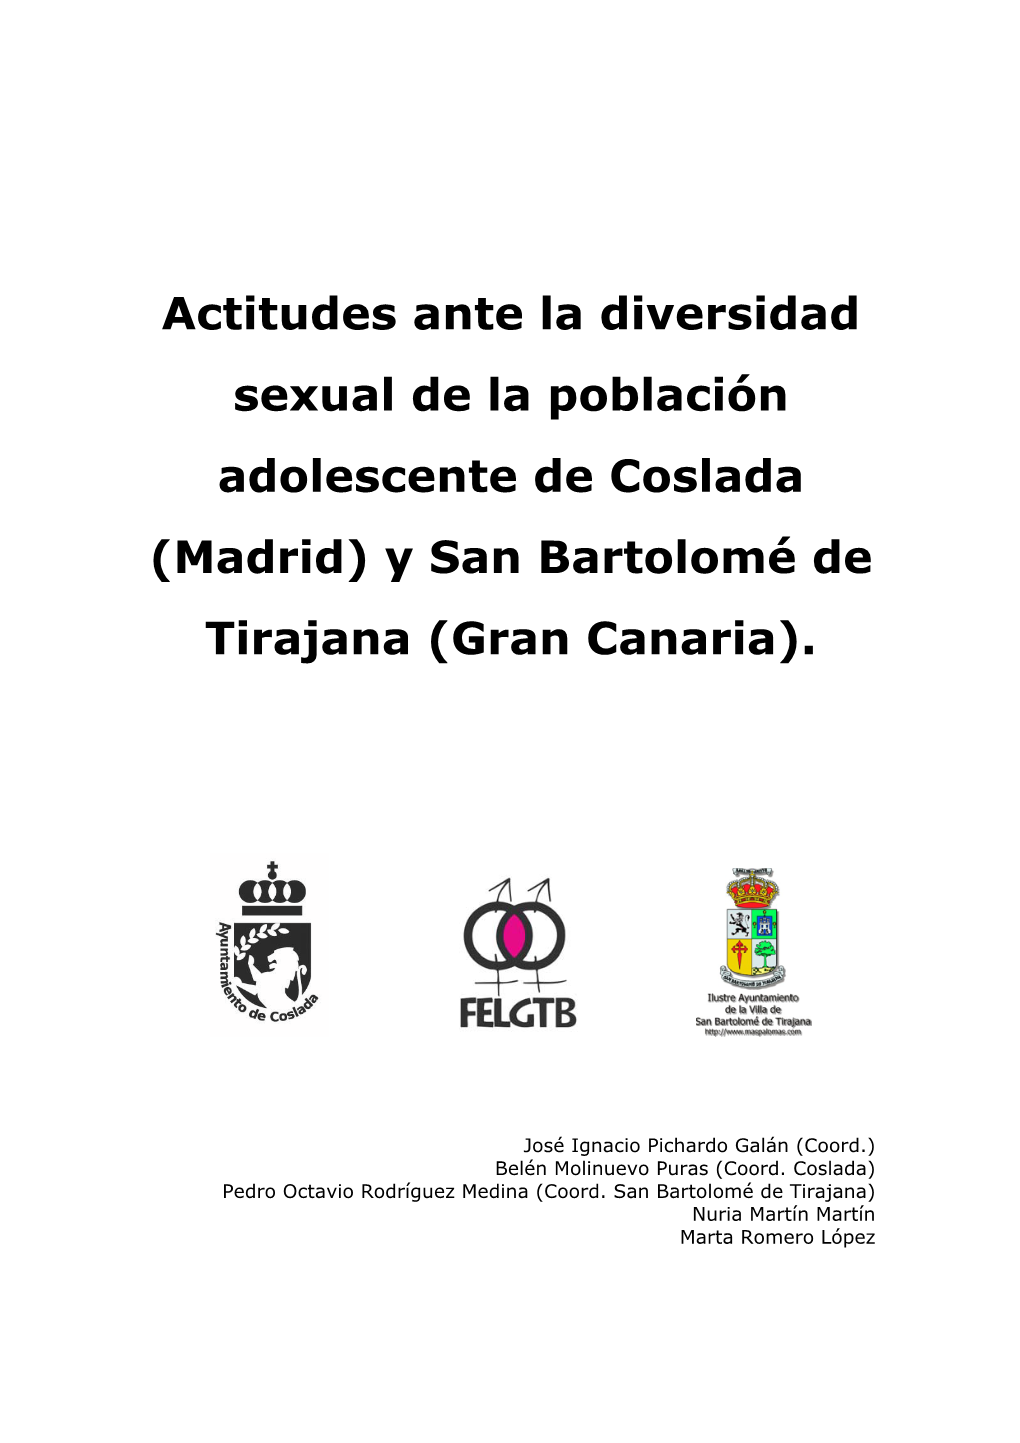 Actitudes Ante La Diversidad Sexual De La Población Adolescente De Coslada (Madrid) Y San Bartolomé De Tirajana (Gran Canaria)